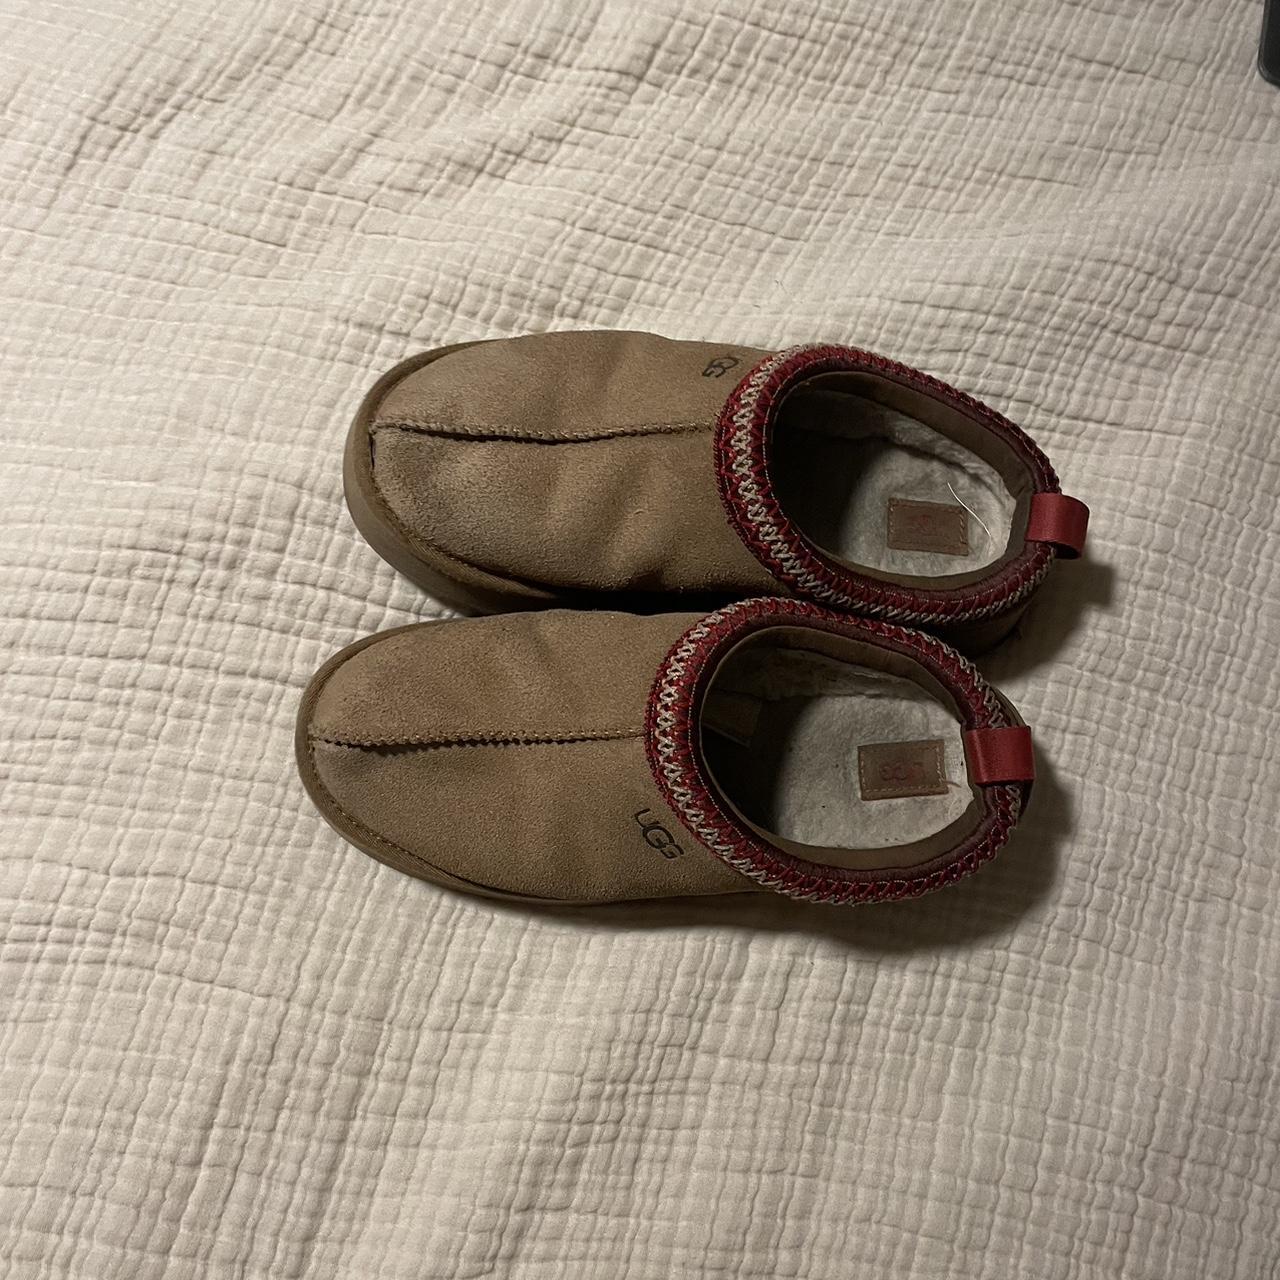 tan platform, Taz, UGG slippers. runs small - Depop